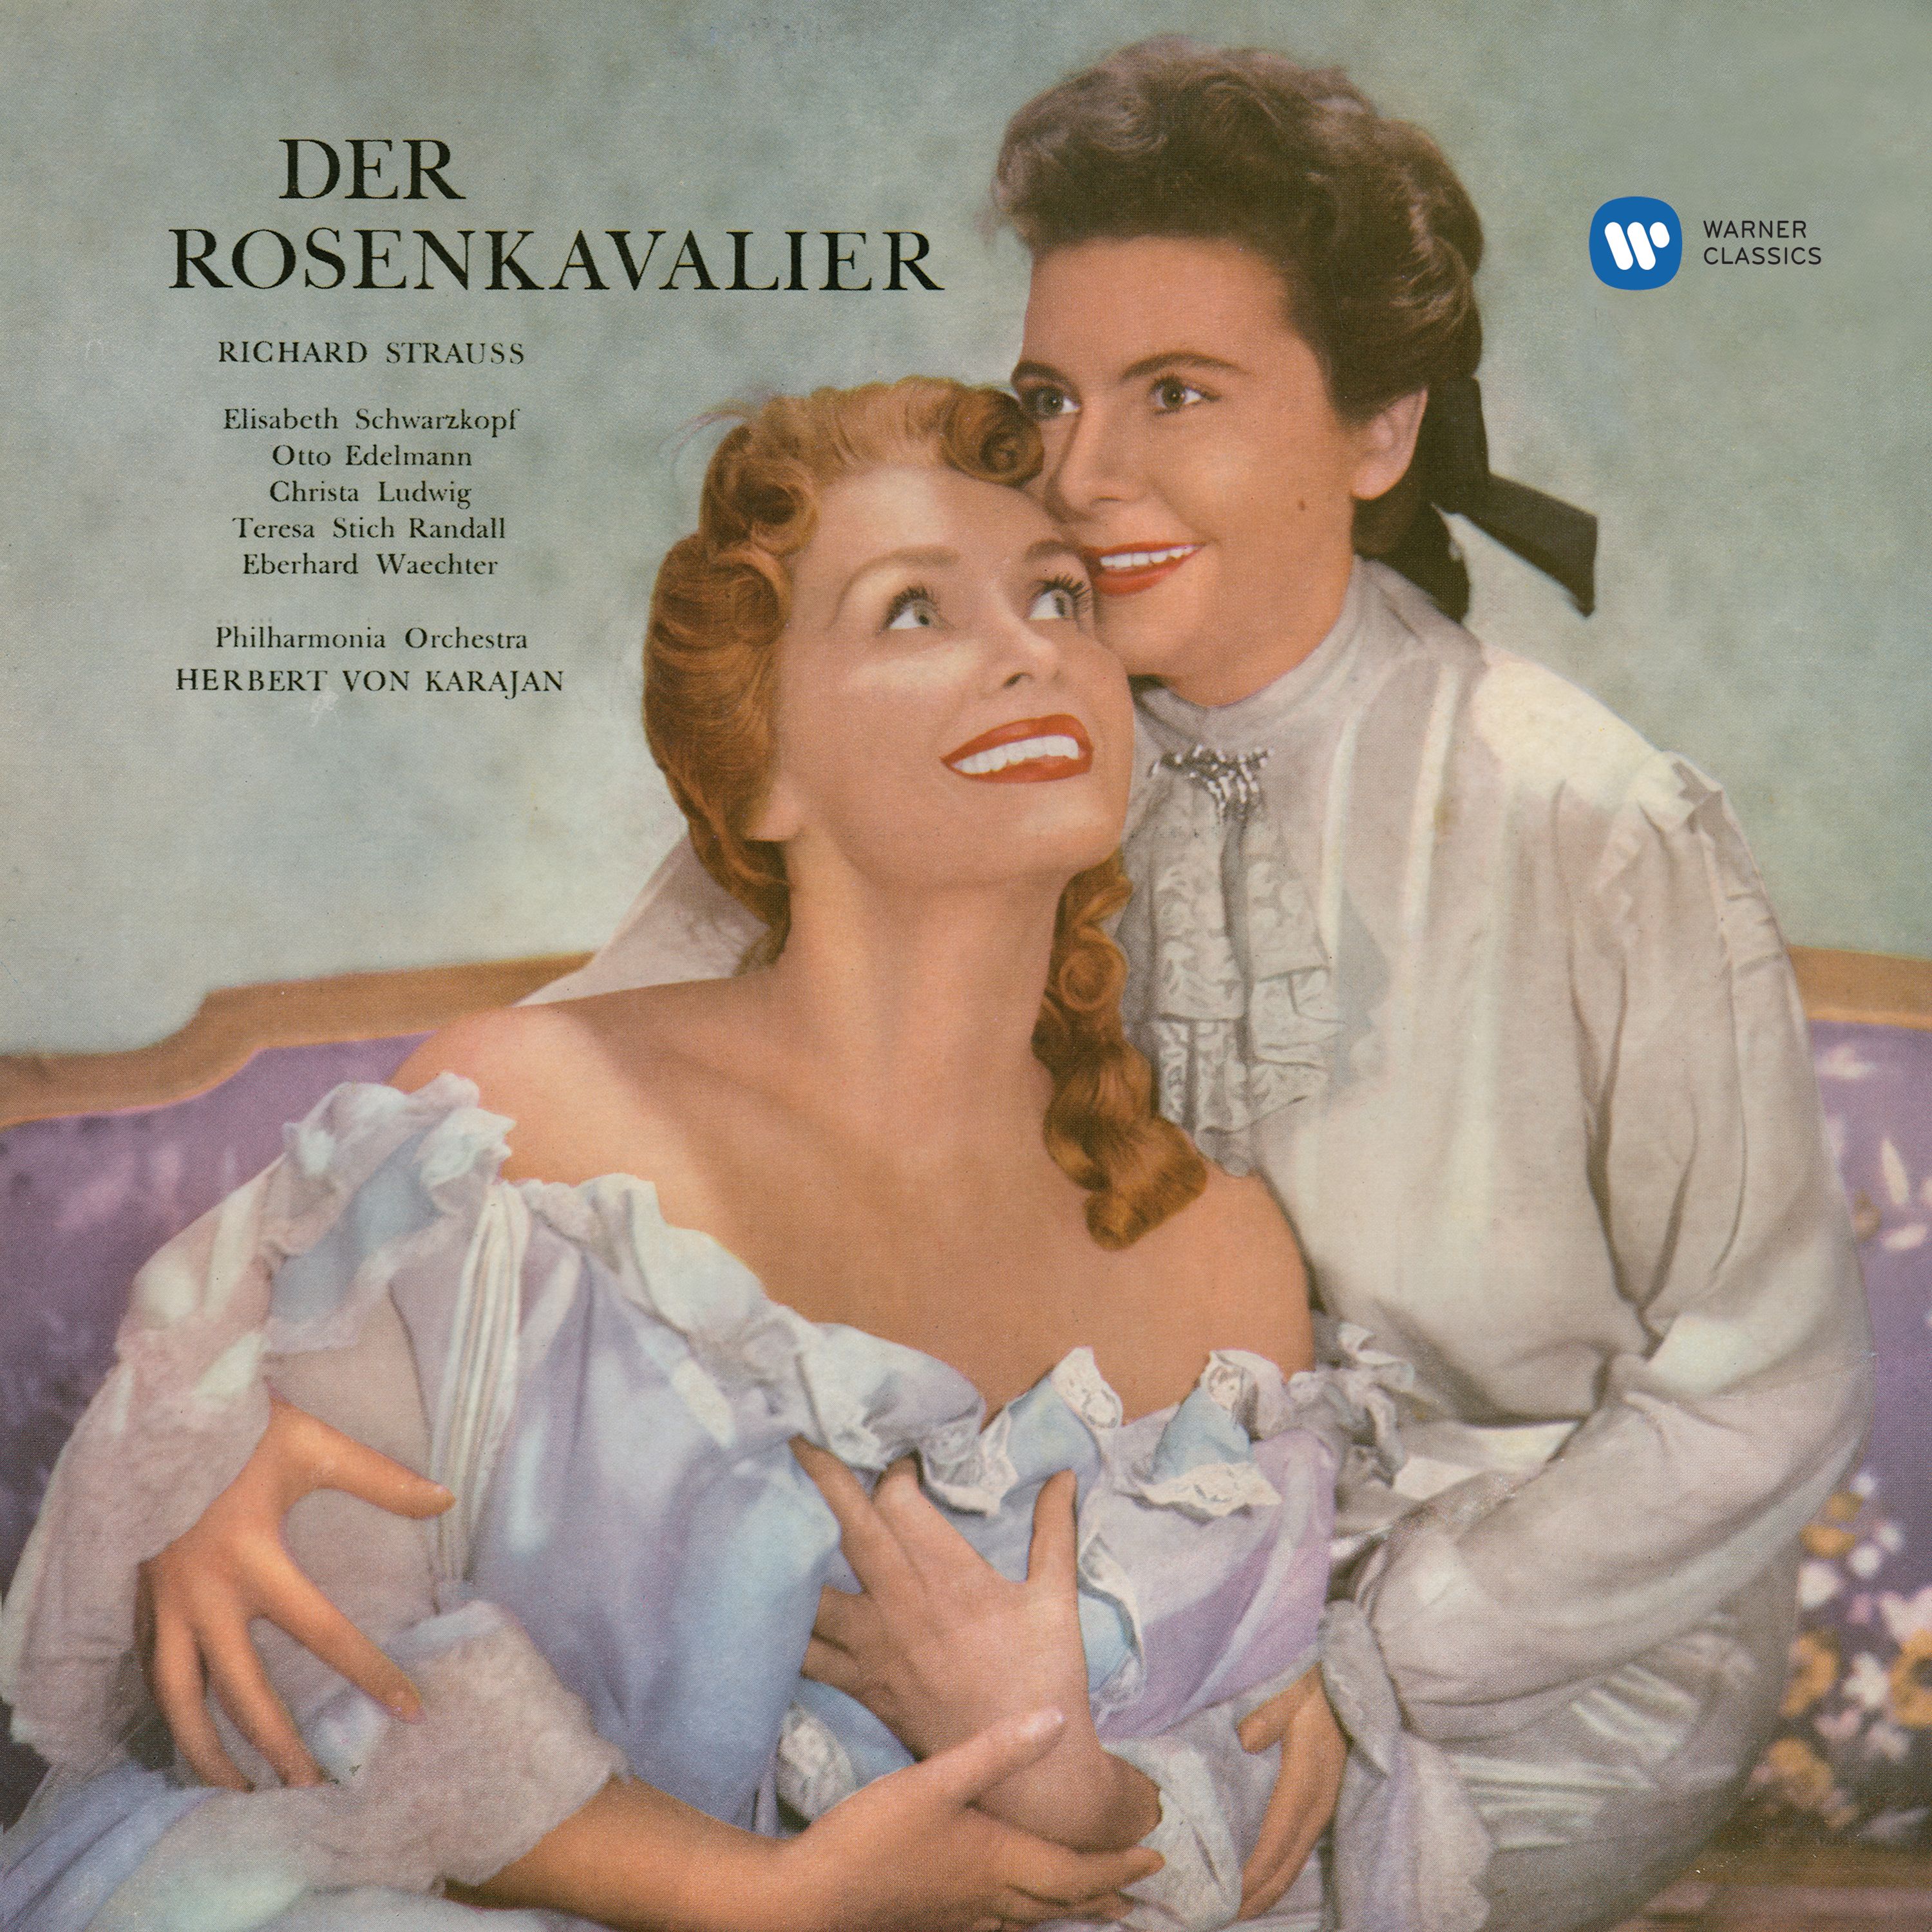 Der Rosenkavalier, Op. 59, Act 2: " In dieser feierlichen Stunde der Prü fung" Sophie, Marianne, Lauffer